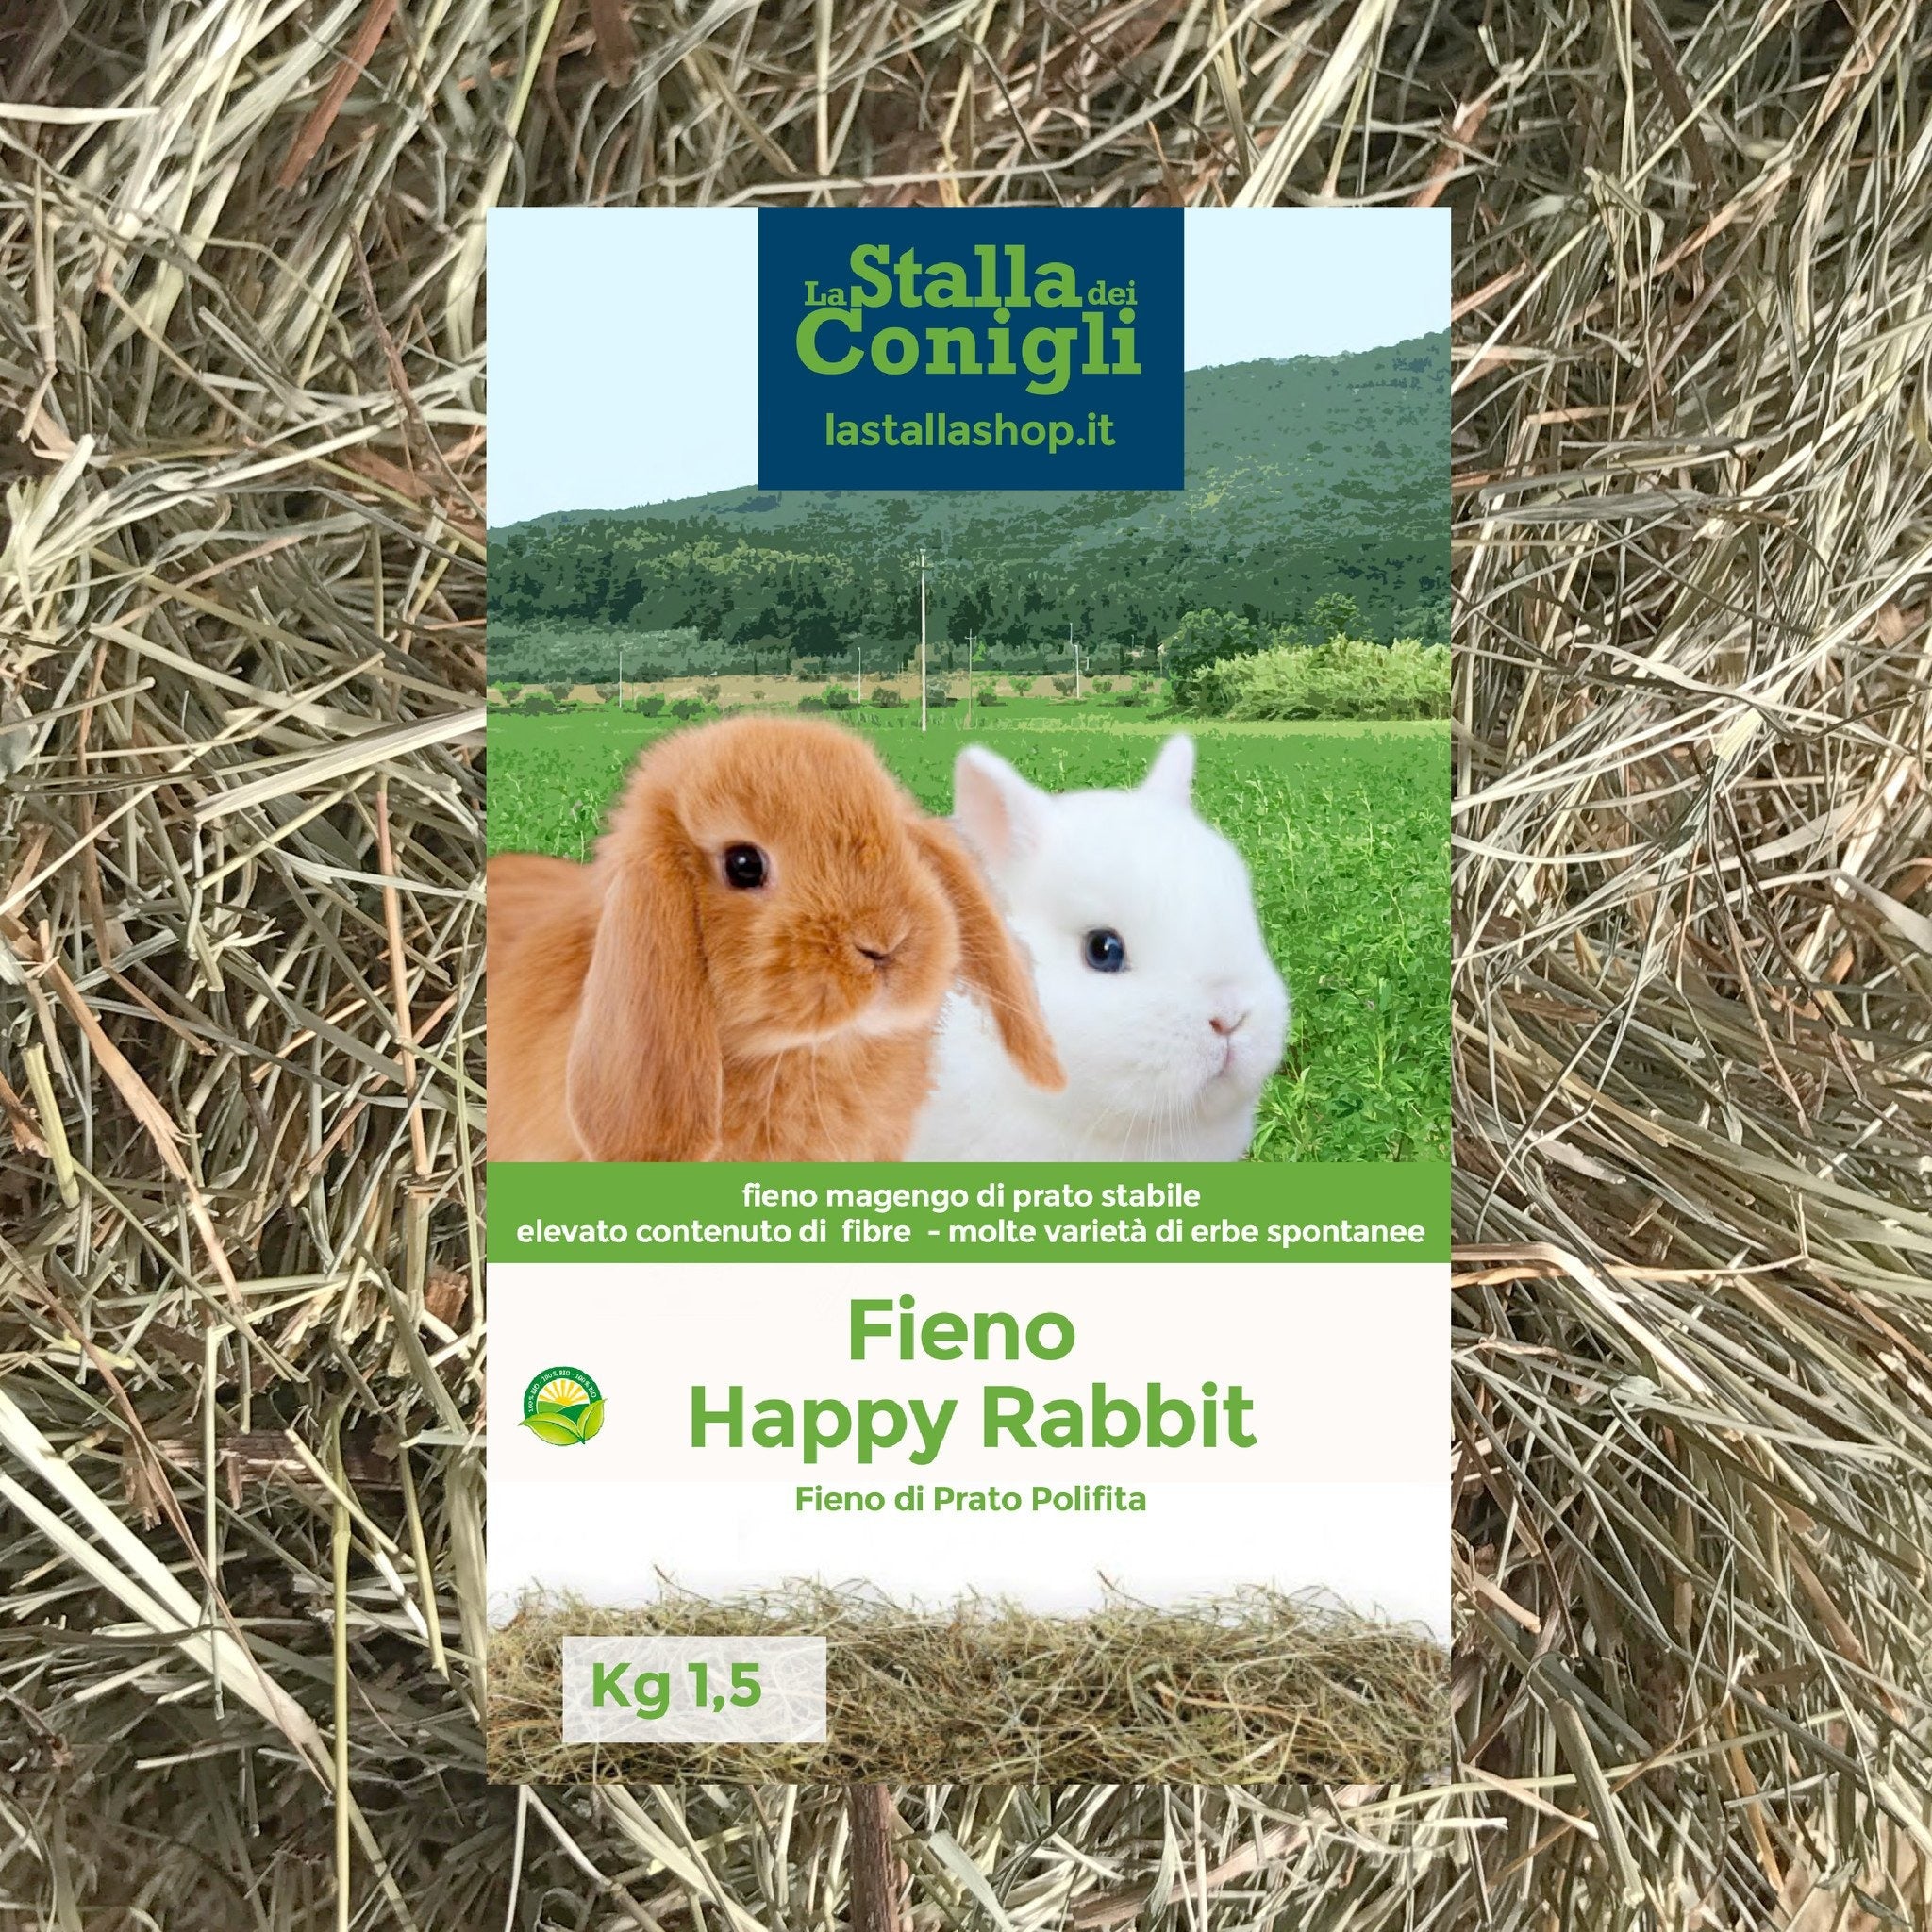 Fieno per Conigli Happy Rabbit - La Stalla dei Conigli Shop